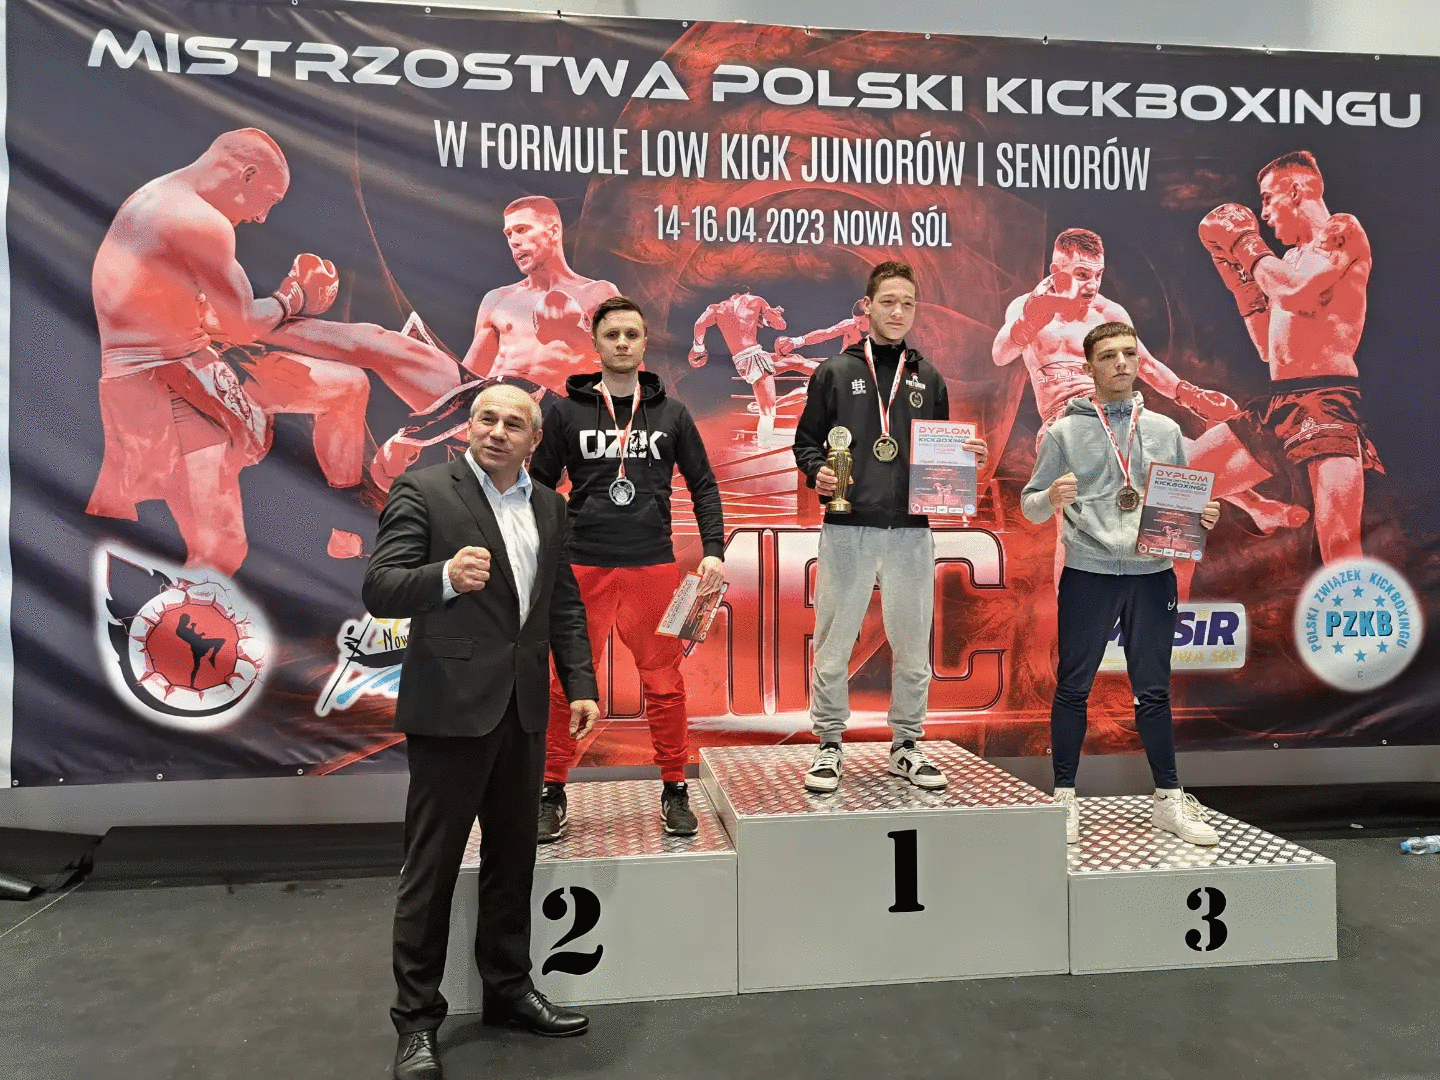 Czarek_Osie-podium-2.gif - 969.81 KB